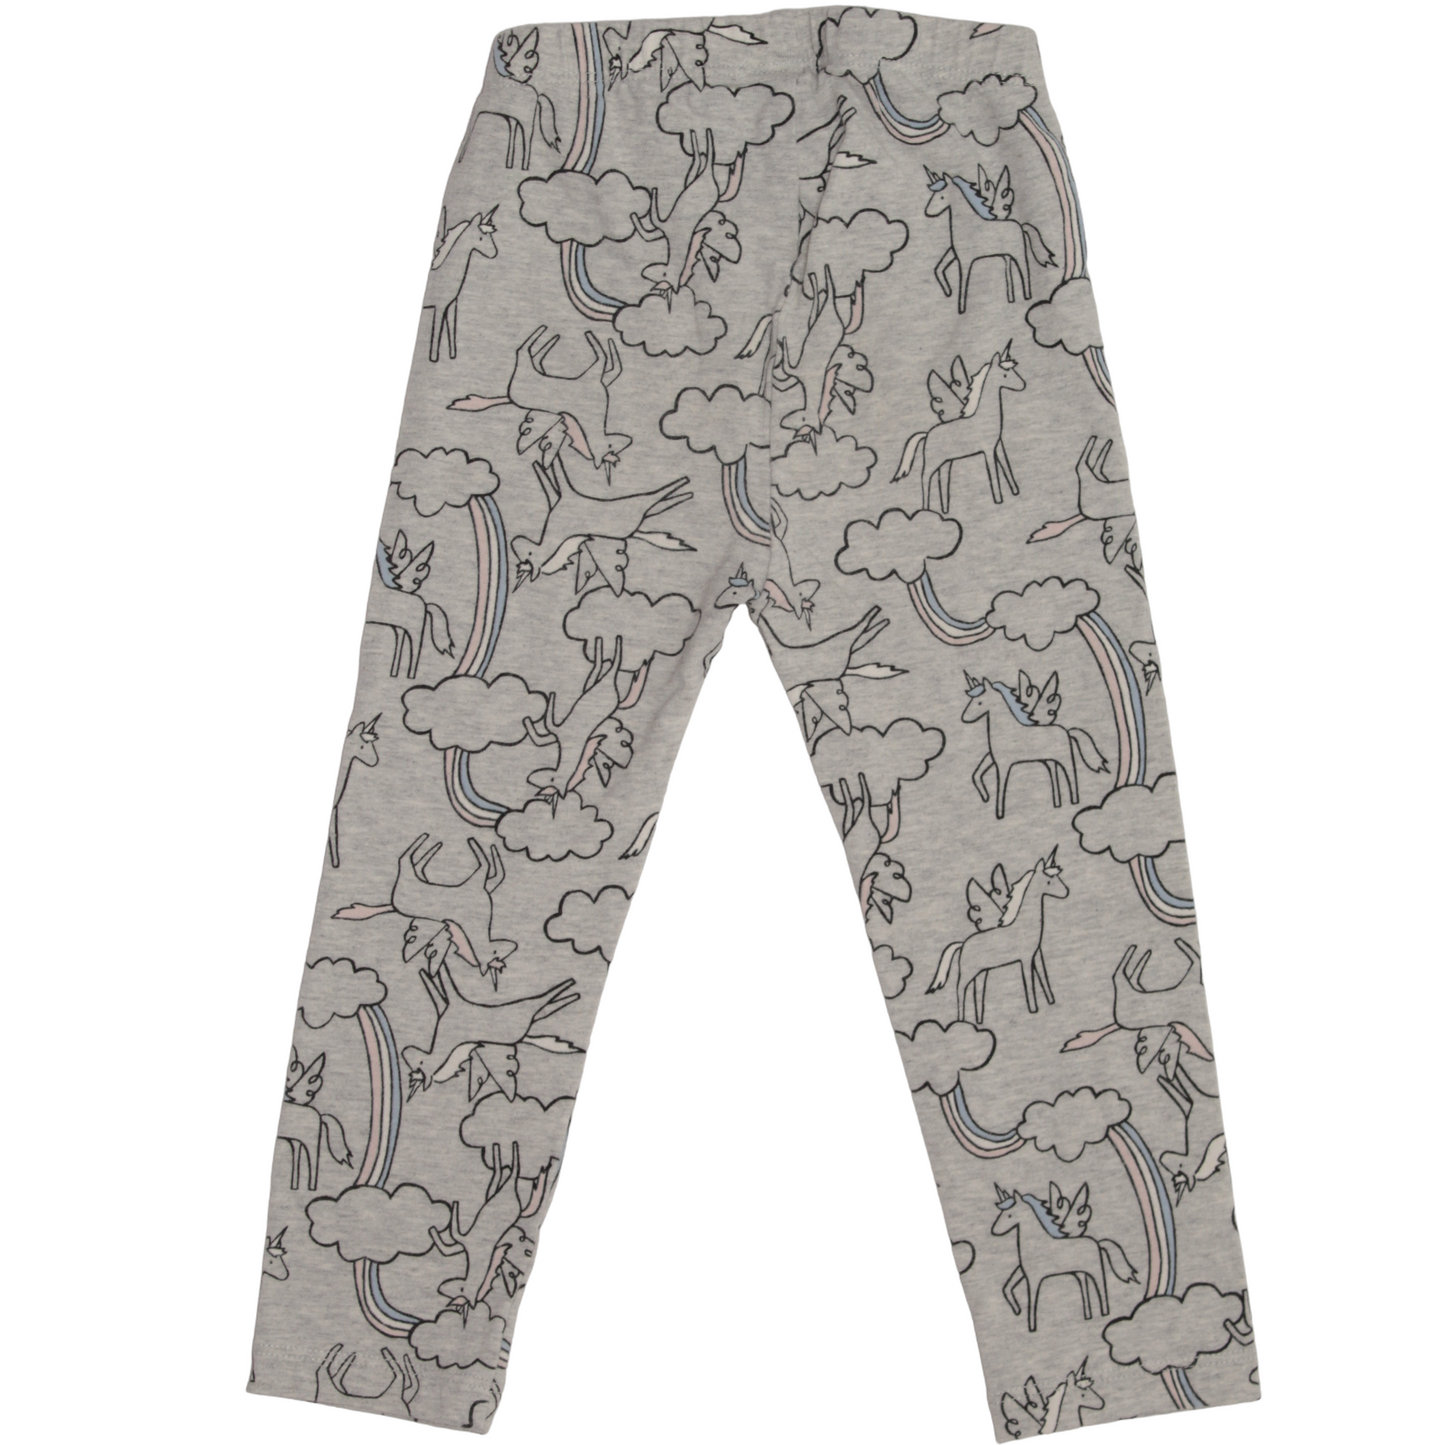 Pantalón gris con unicornios 2 años